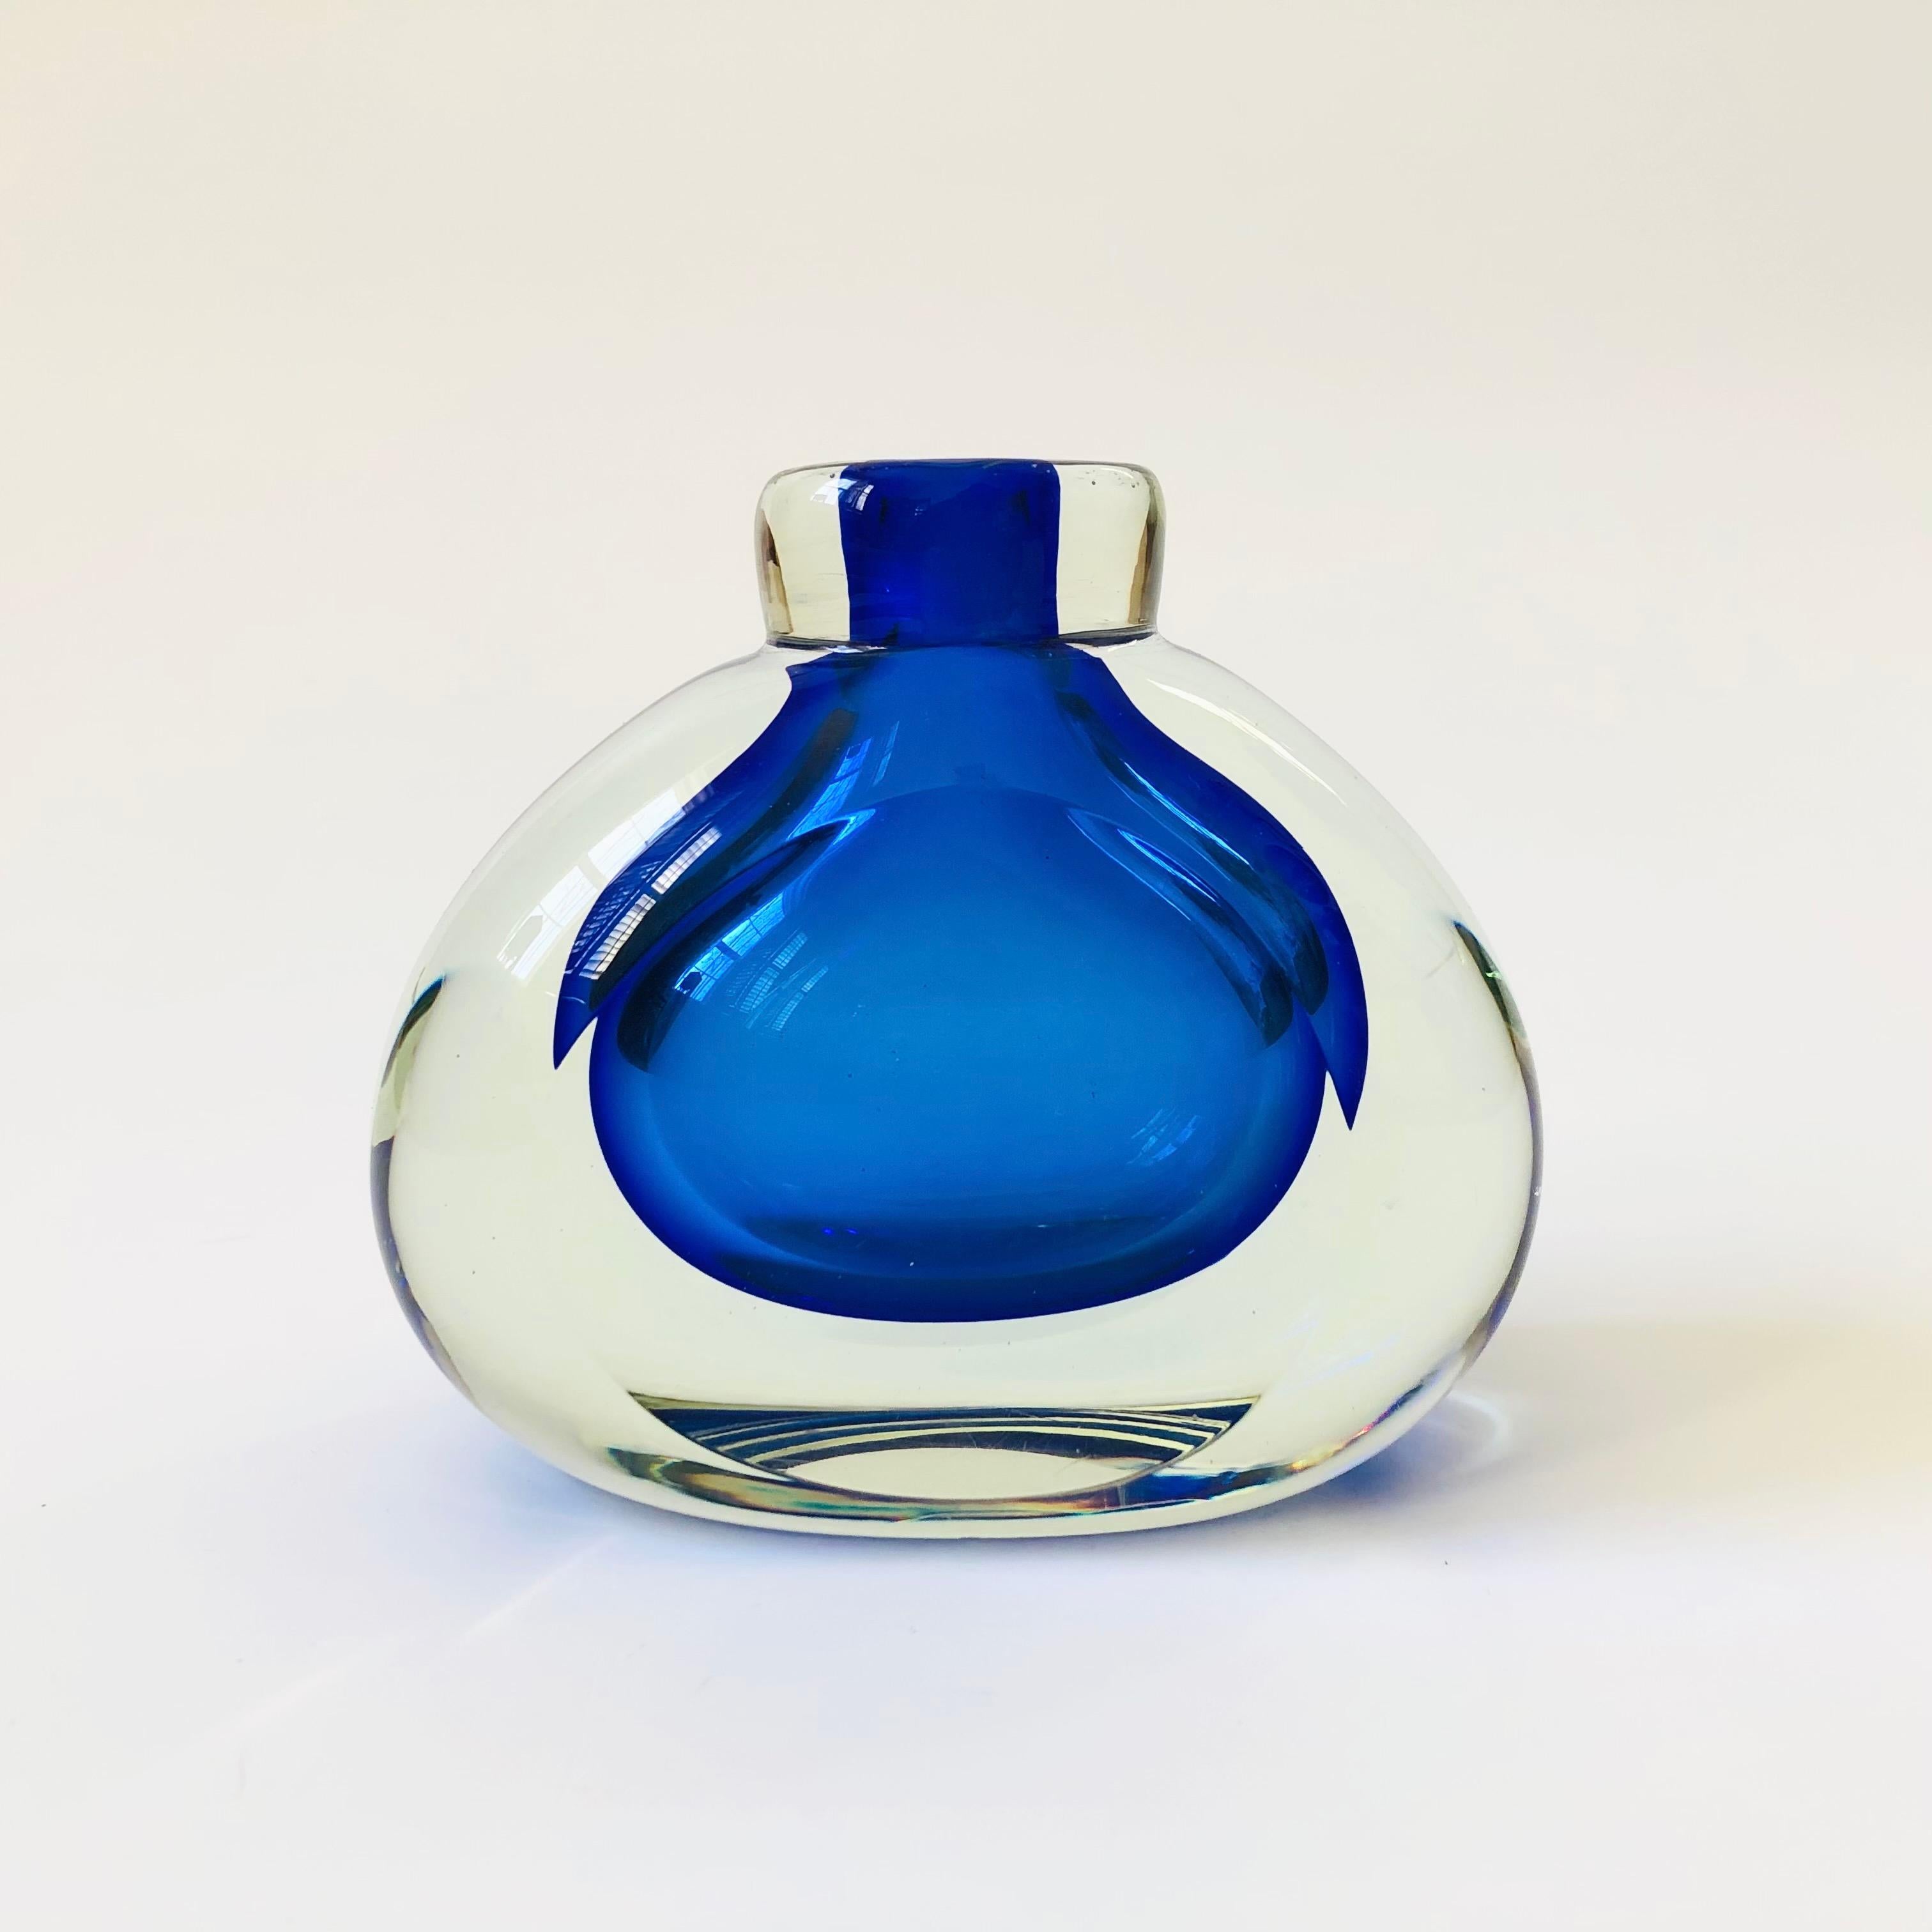 Un magnifique vase vintage en verre d'art de style sommerso. Le verre intérieur bleu cobalt vibrant est entouré d'un verre extérieur épais et transparent. Côtés aplatis. Une belle pièce d'accent sculpturale.

